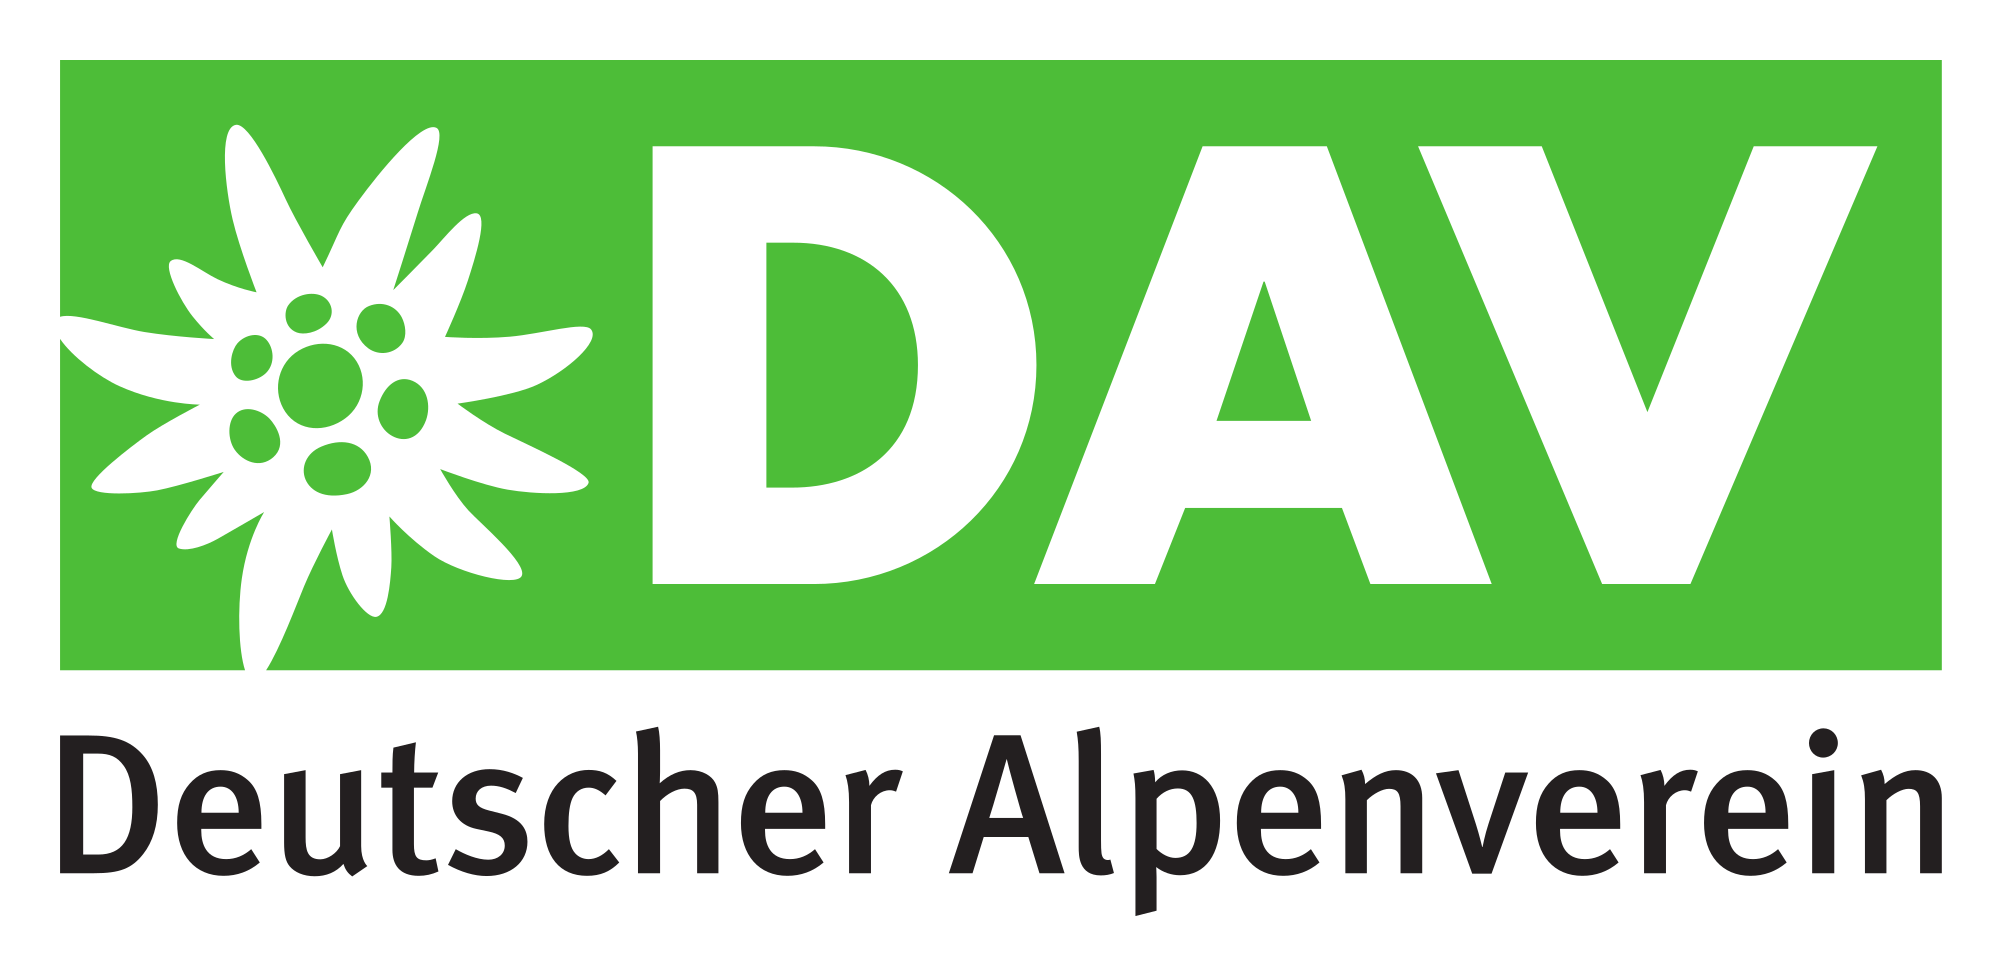 Suchergebnisse Webergebnis mit Sitelinks Deutscher Alpenverein (DAV)